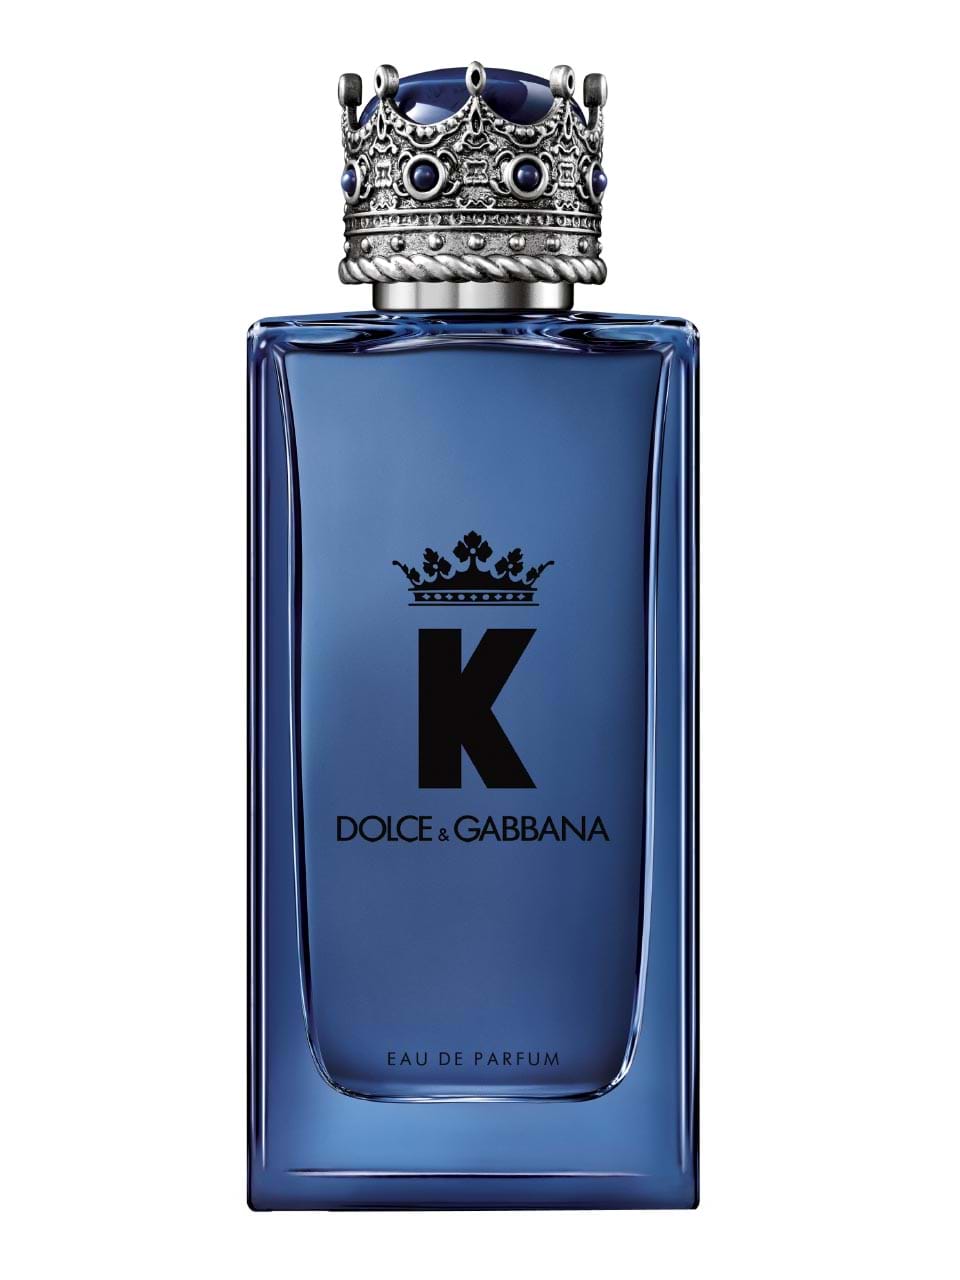 Bevidst at retfærdiggøre Rejse Dolce & Gabbana - fragrance for him and her - see here